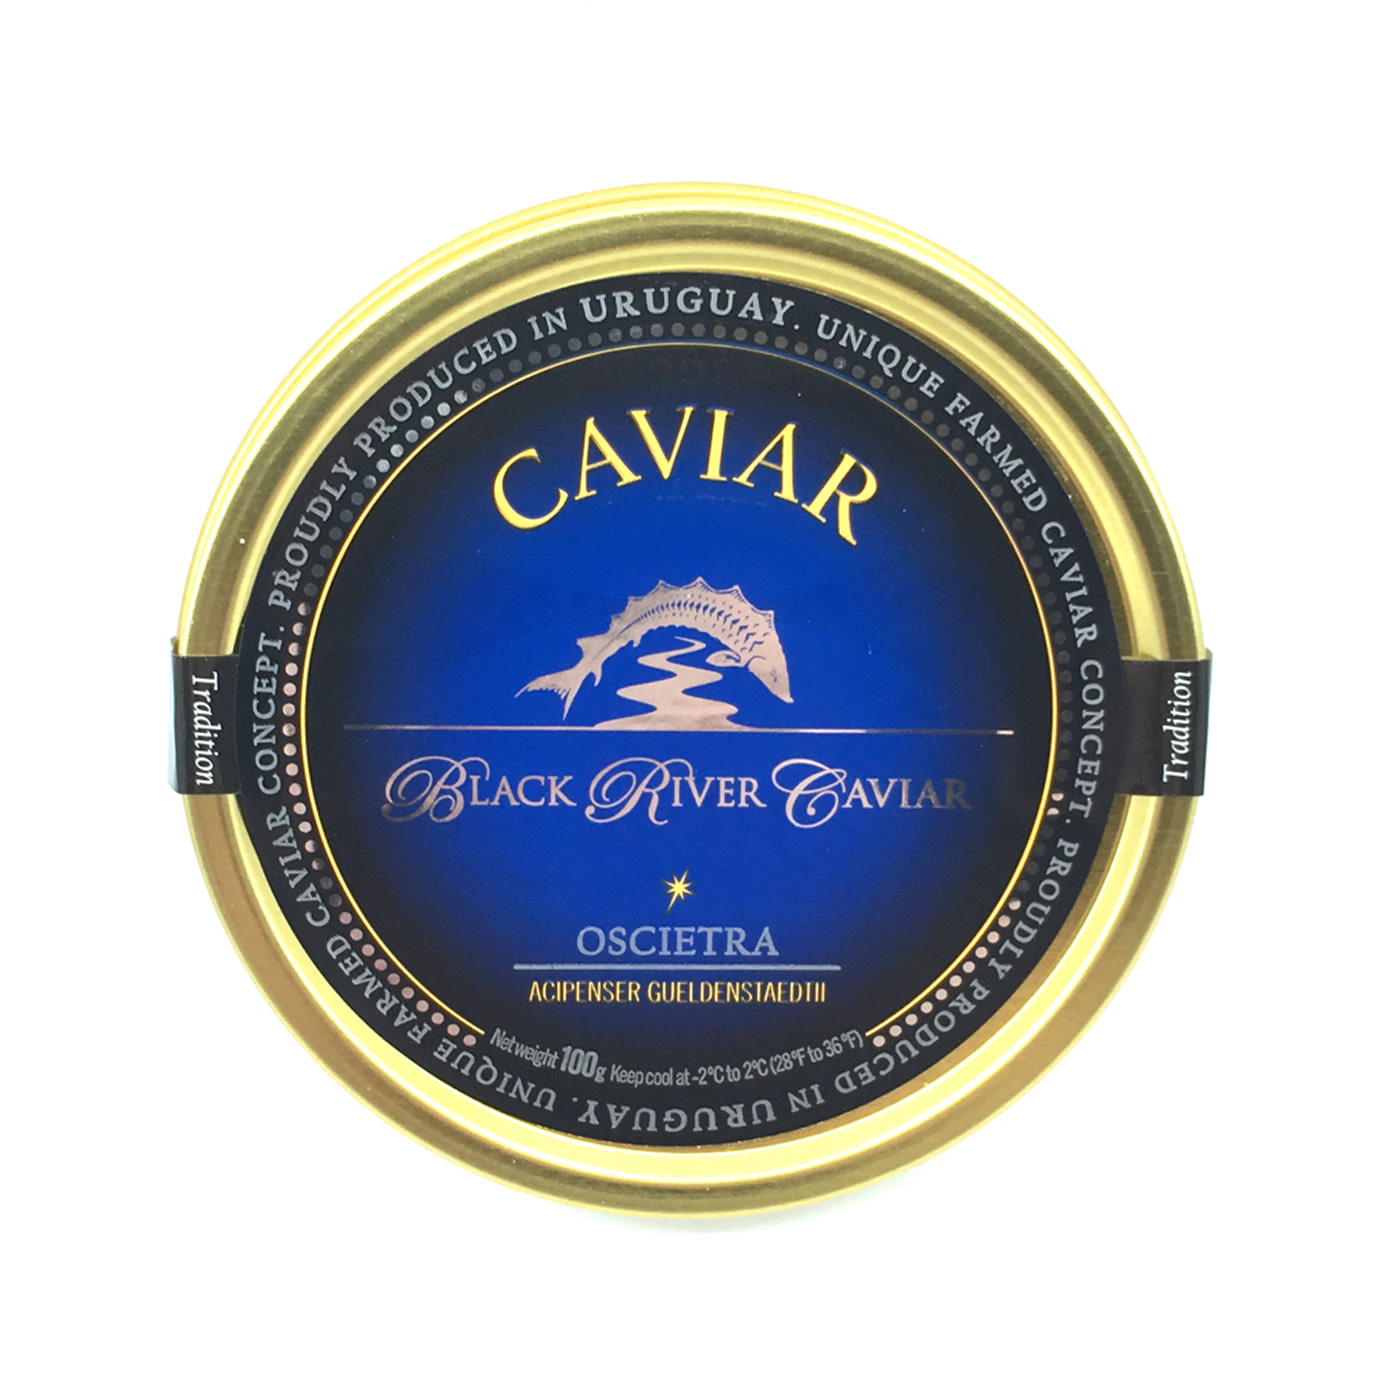 Black River Caviar Oscietra Tradition 250g